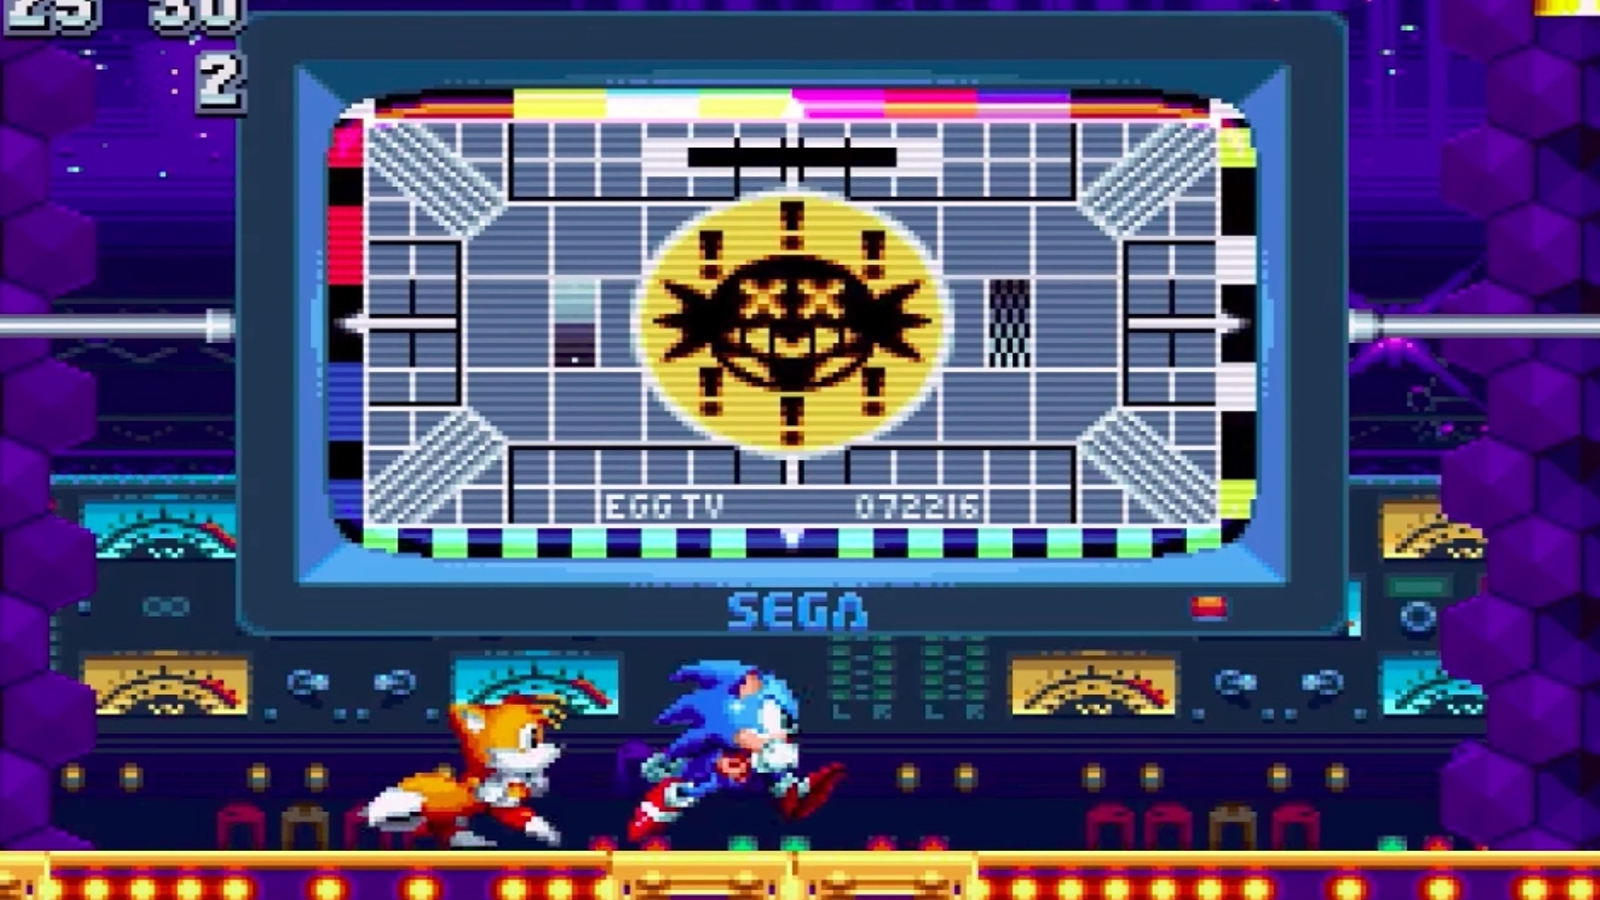 Sonic Mania Dev on Origins of Easter Eggs, Sega References